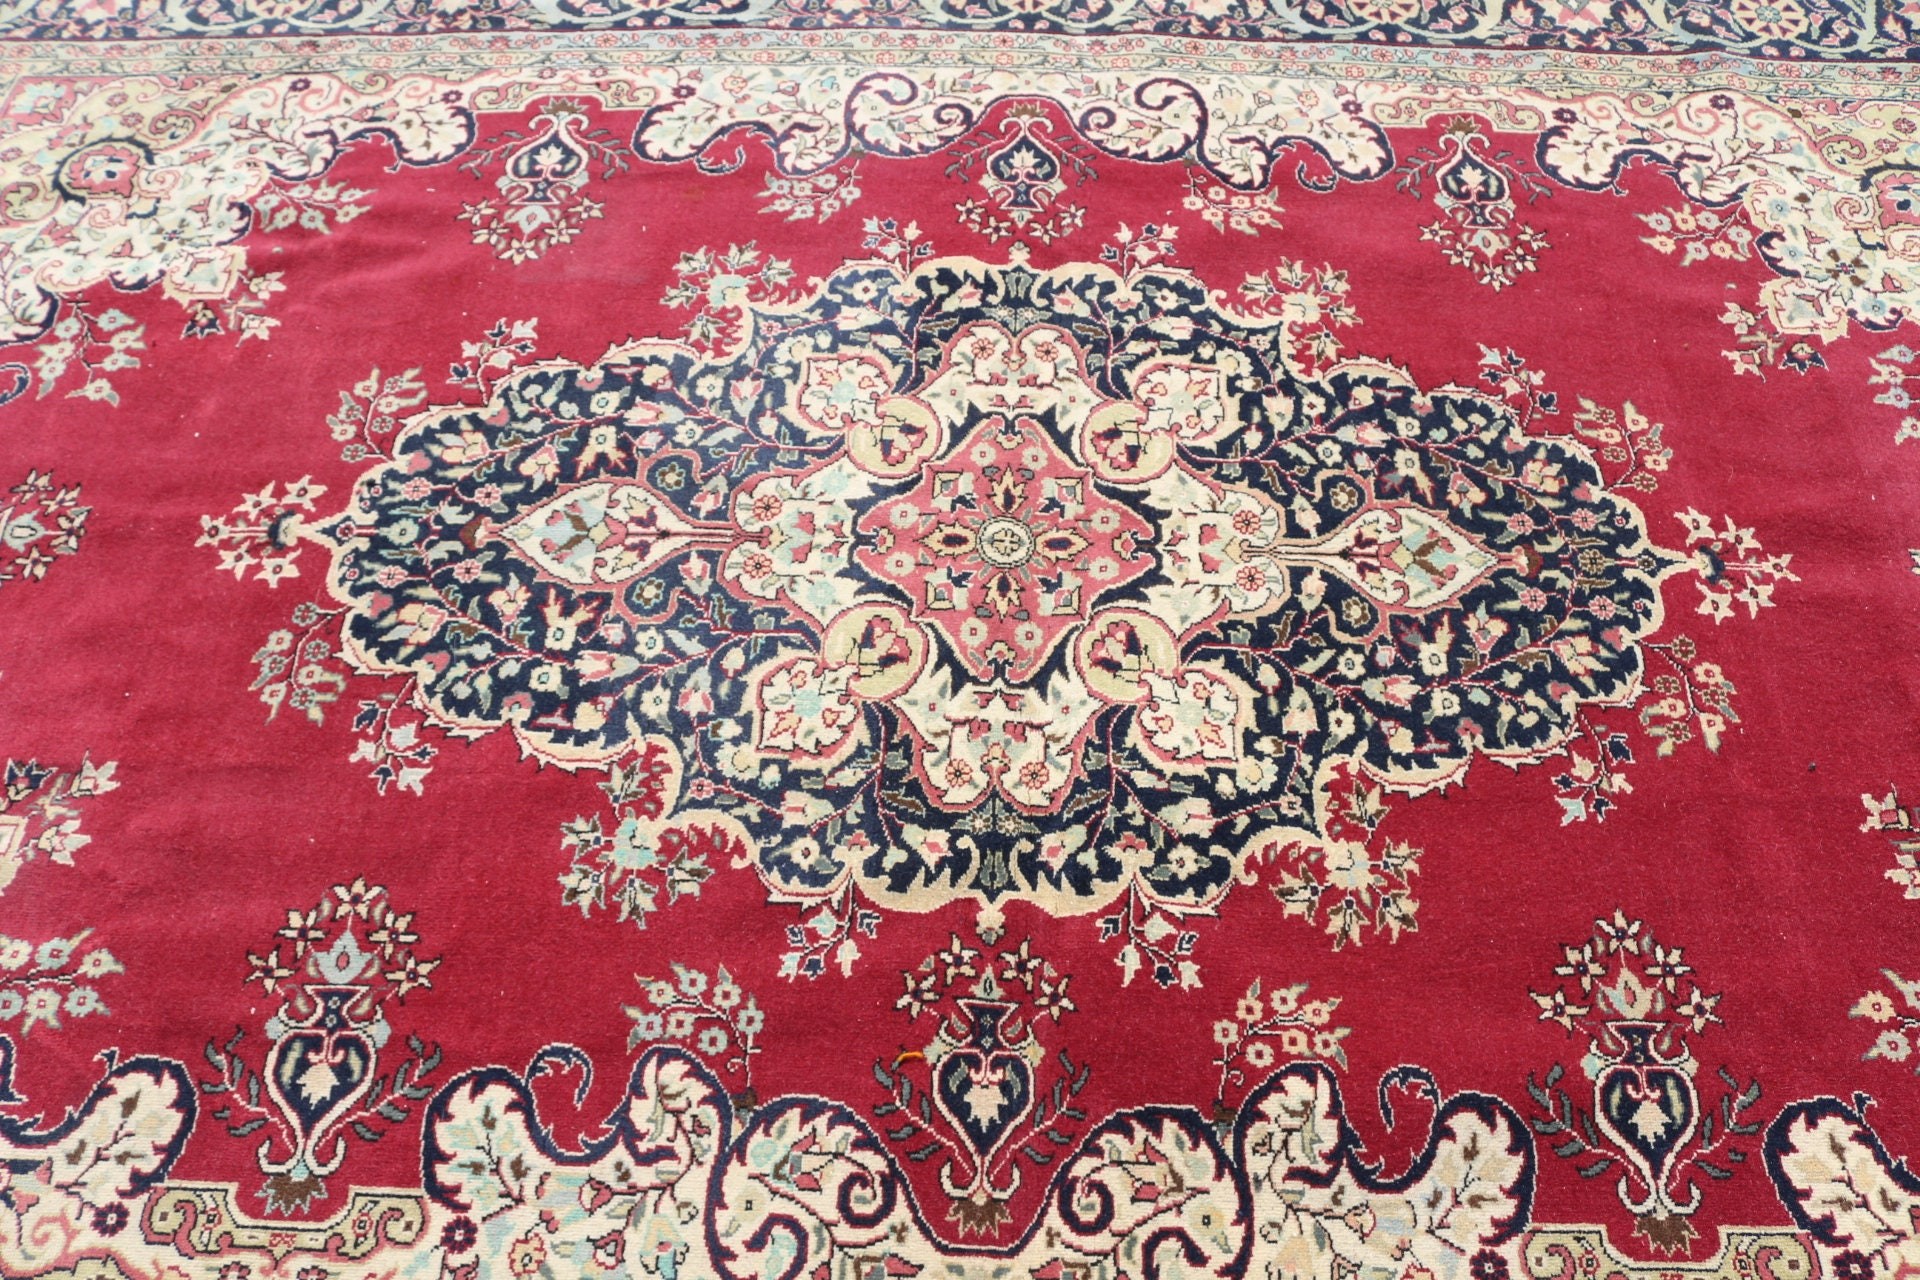 Turkish Rug, Antique Rug, Dining Room Rugs, Red Cool Rug, 6.8x10.4 ft Oversize Rug, Kitchen Rug, Bright Rugs, Vintage Rug, Living Room Rug